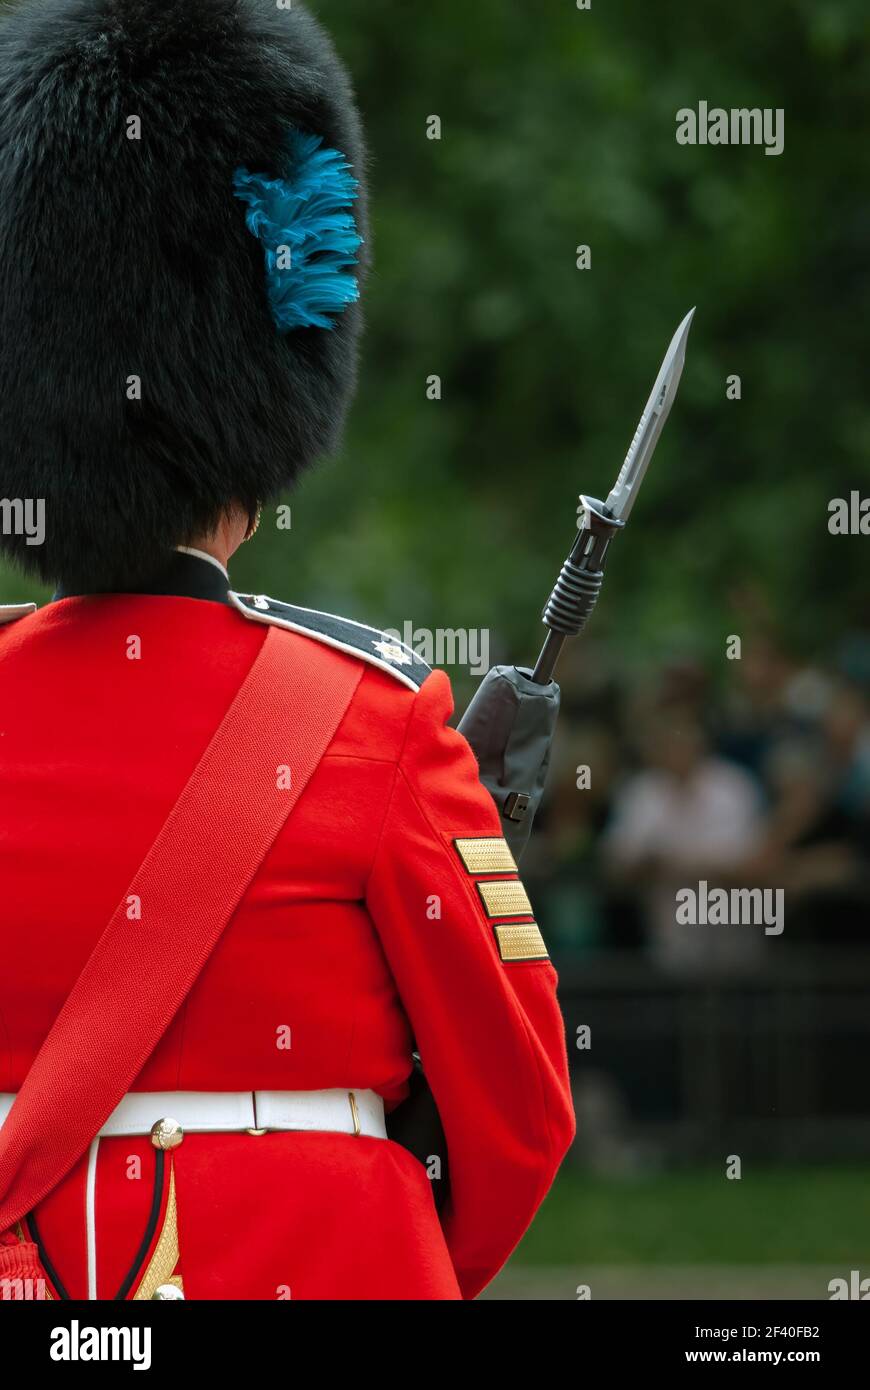 LONDRES, Royaume-Uni - 12 JUIN 2010 : vue arrière de Guardsman des gardes irlandais avec baïonnette fixe lors de la cérémonie Trooping the Color Banque D'Images